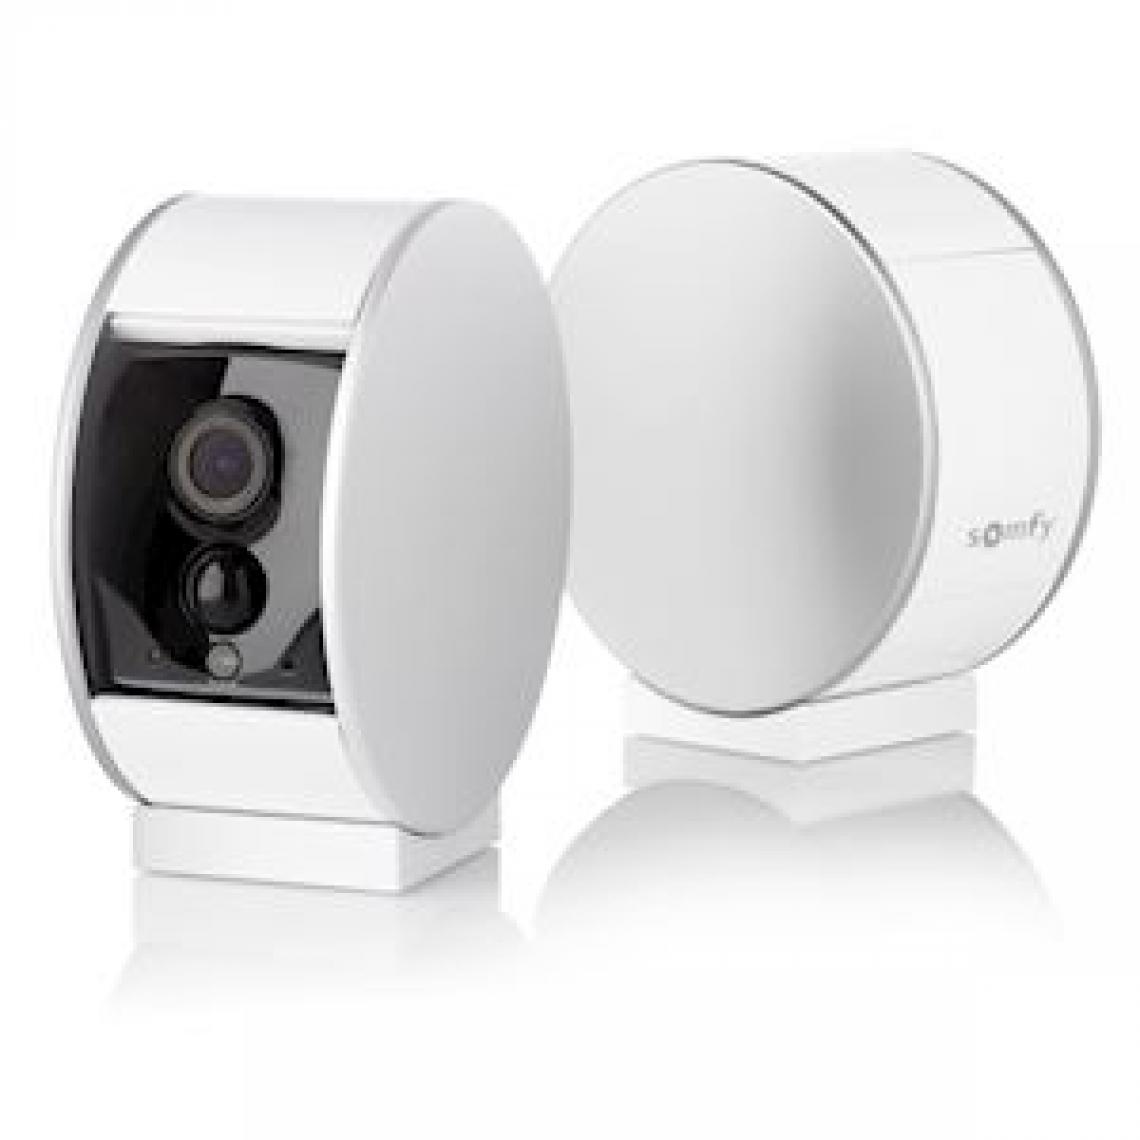 Somfy - camera de surveillance pro - intérieure - somfy indoor camera - somfy 1870345 - Caméra de surveillance connectée